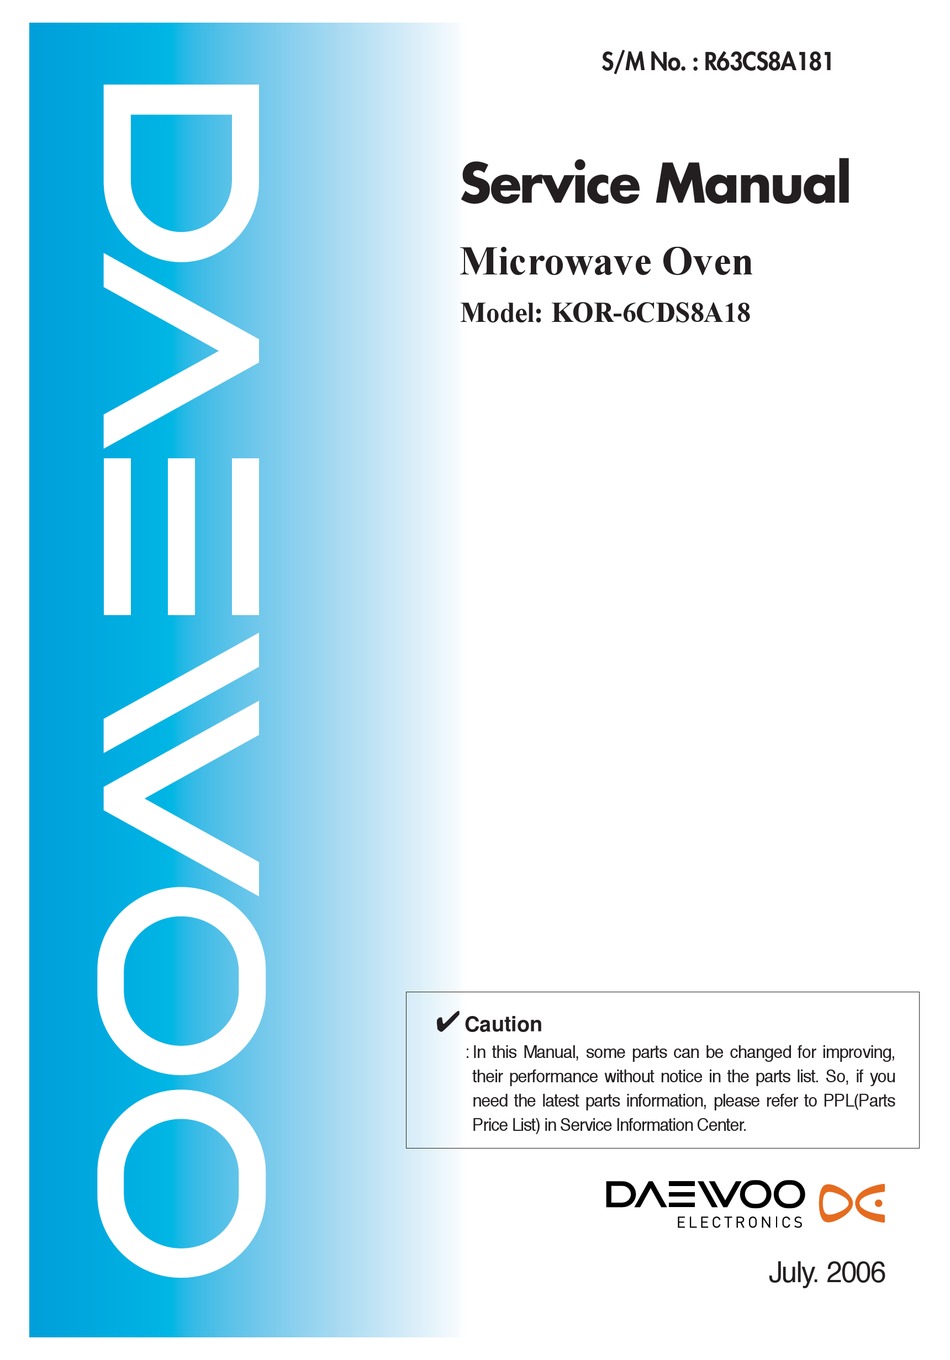 Инструкции к микроволновым печам Daewoo